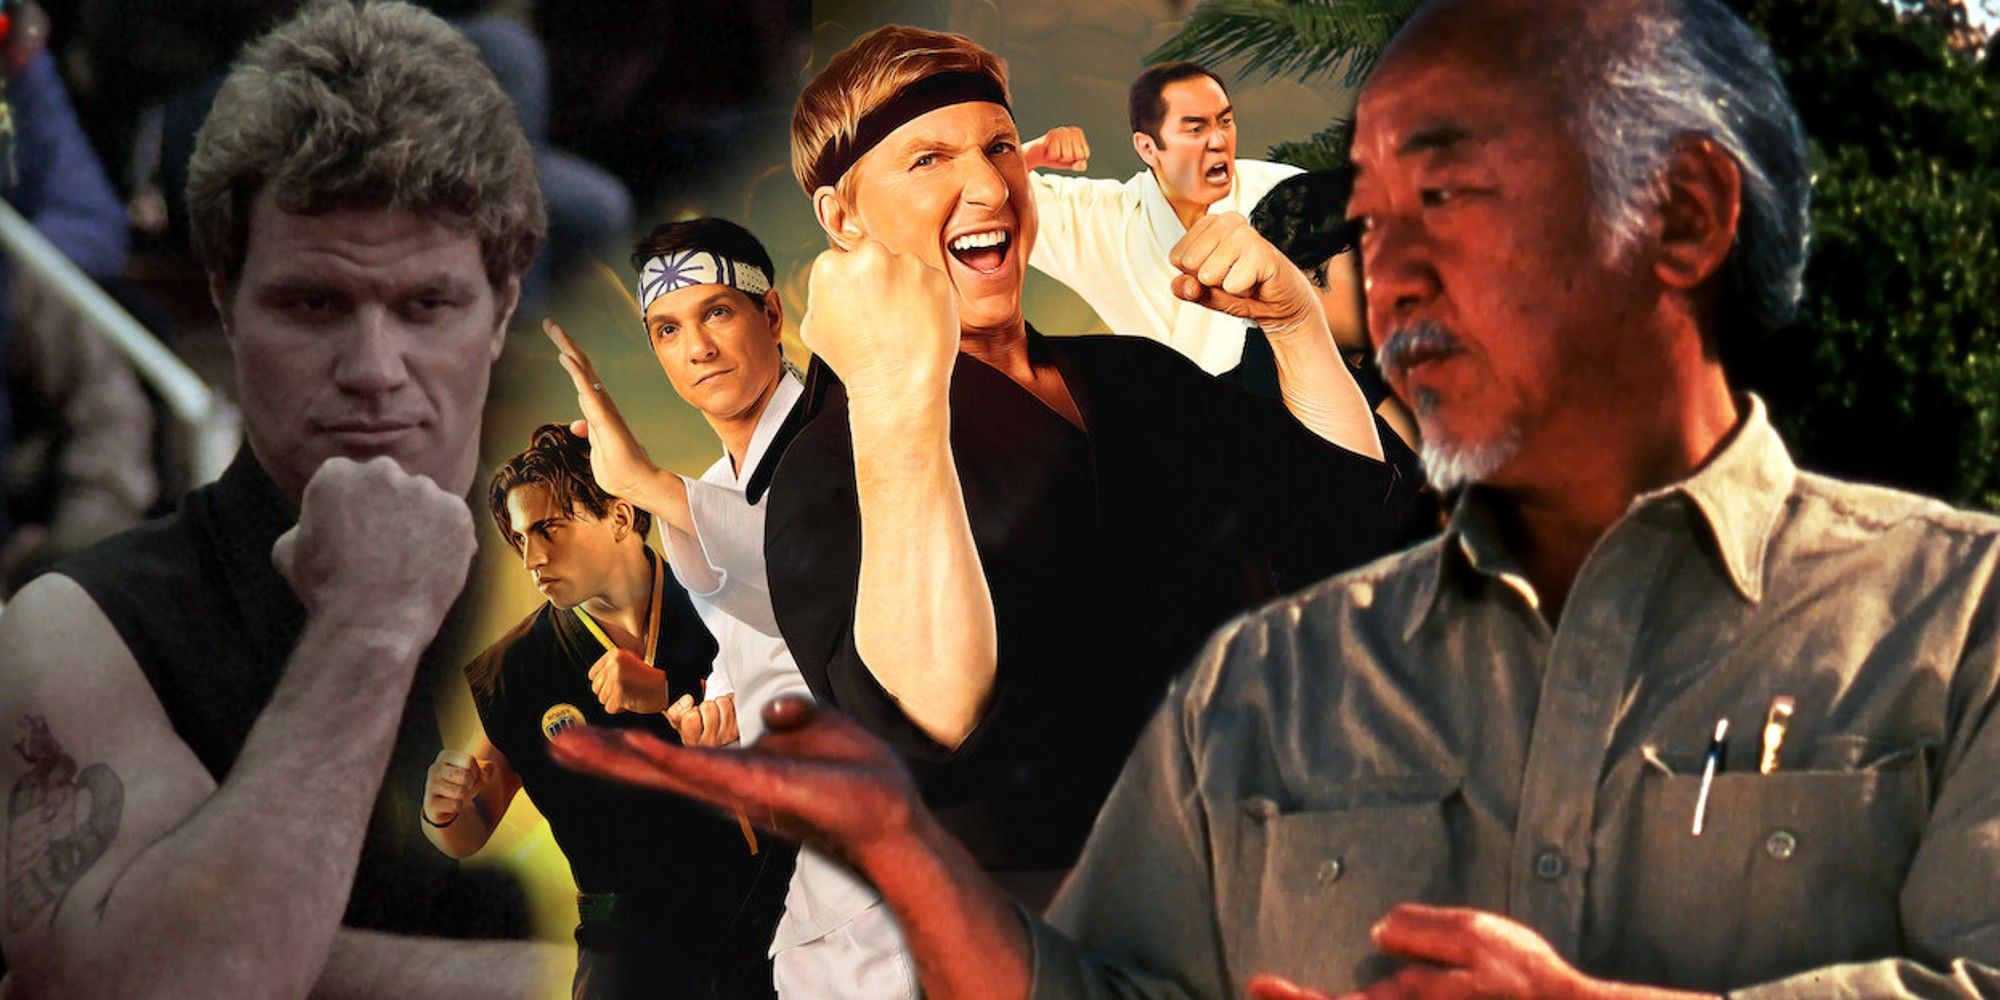 Połączone zdjęcie przedstawia Kreese w Karate Kid, członków obsady Cobra Kai i Miyagi w Karate Kid